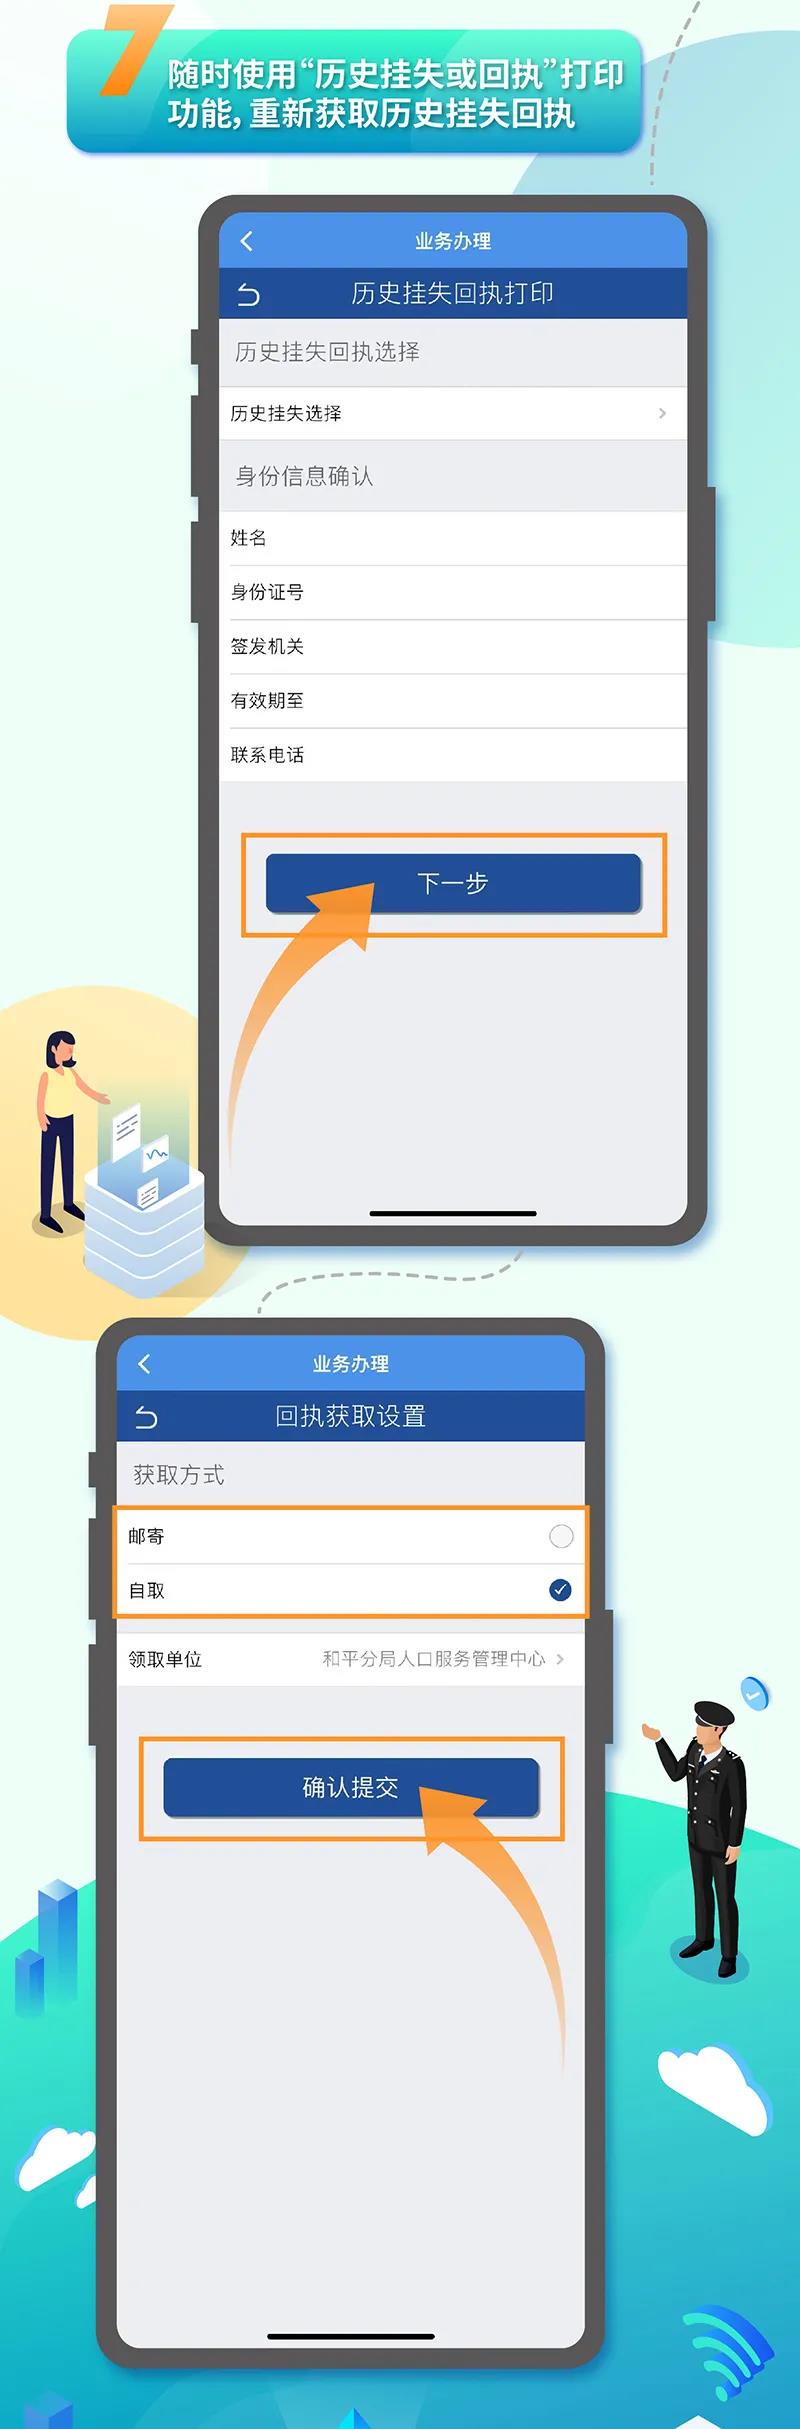 天津户籍人员身份证挂失网上办理流程